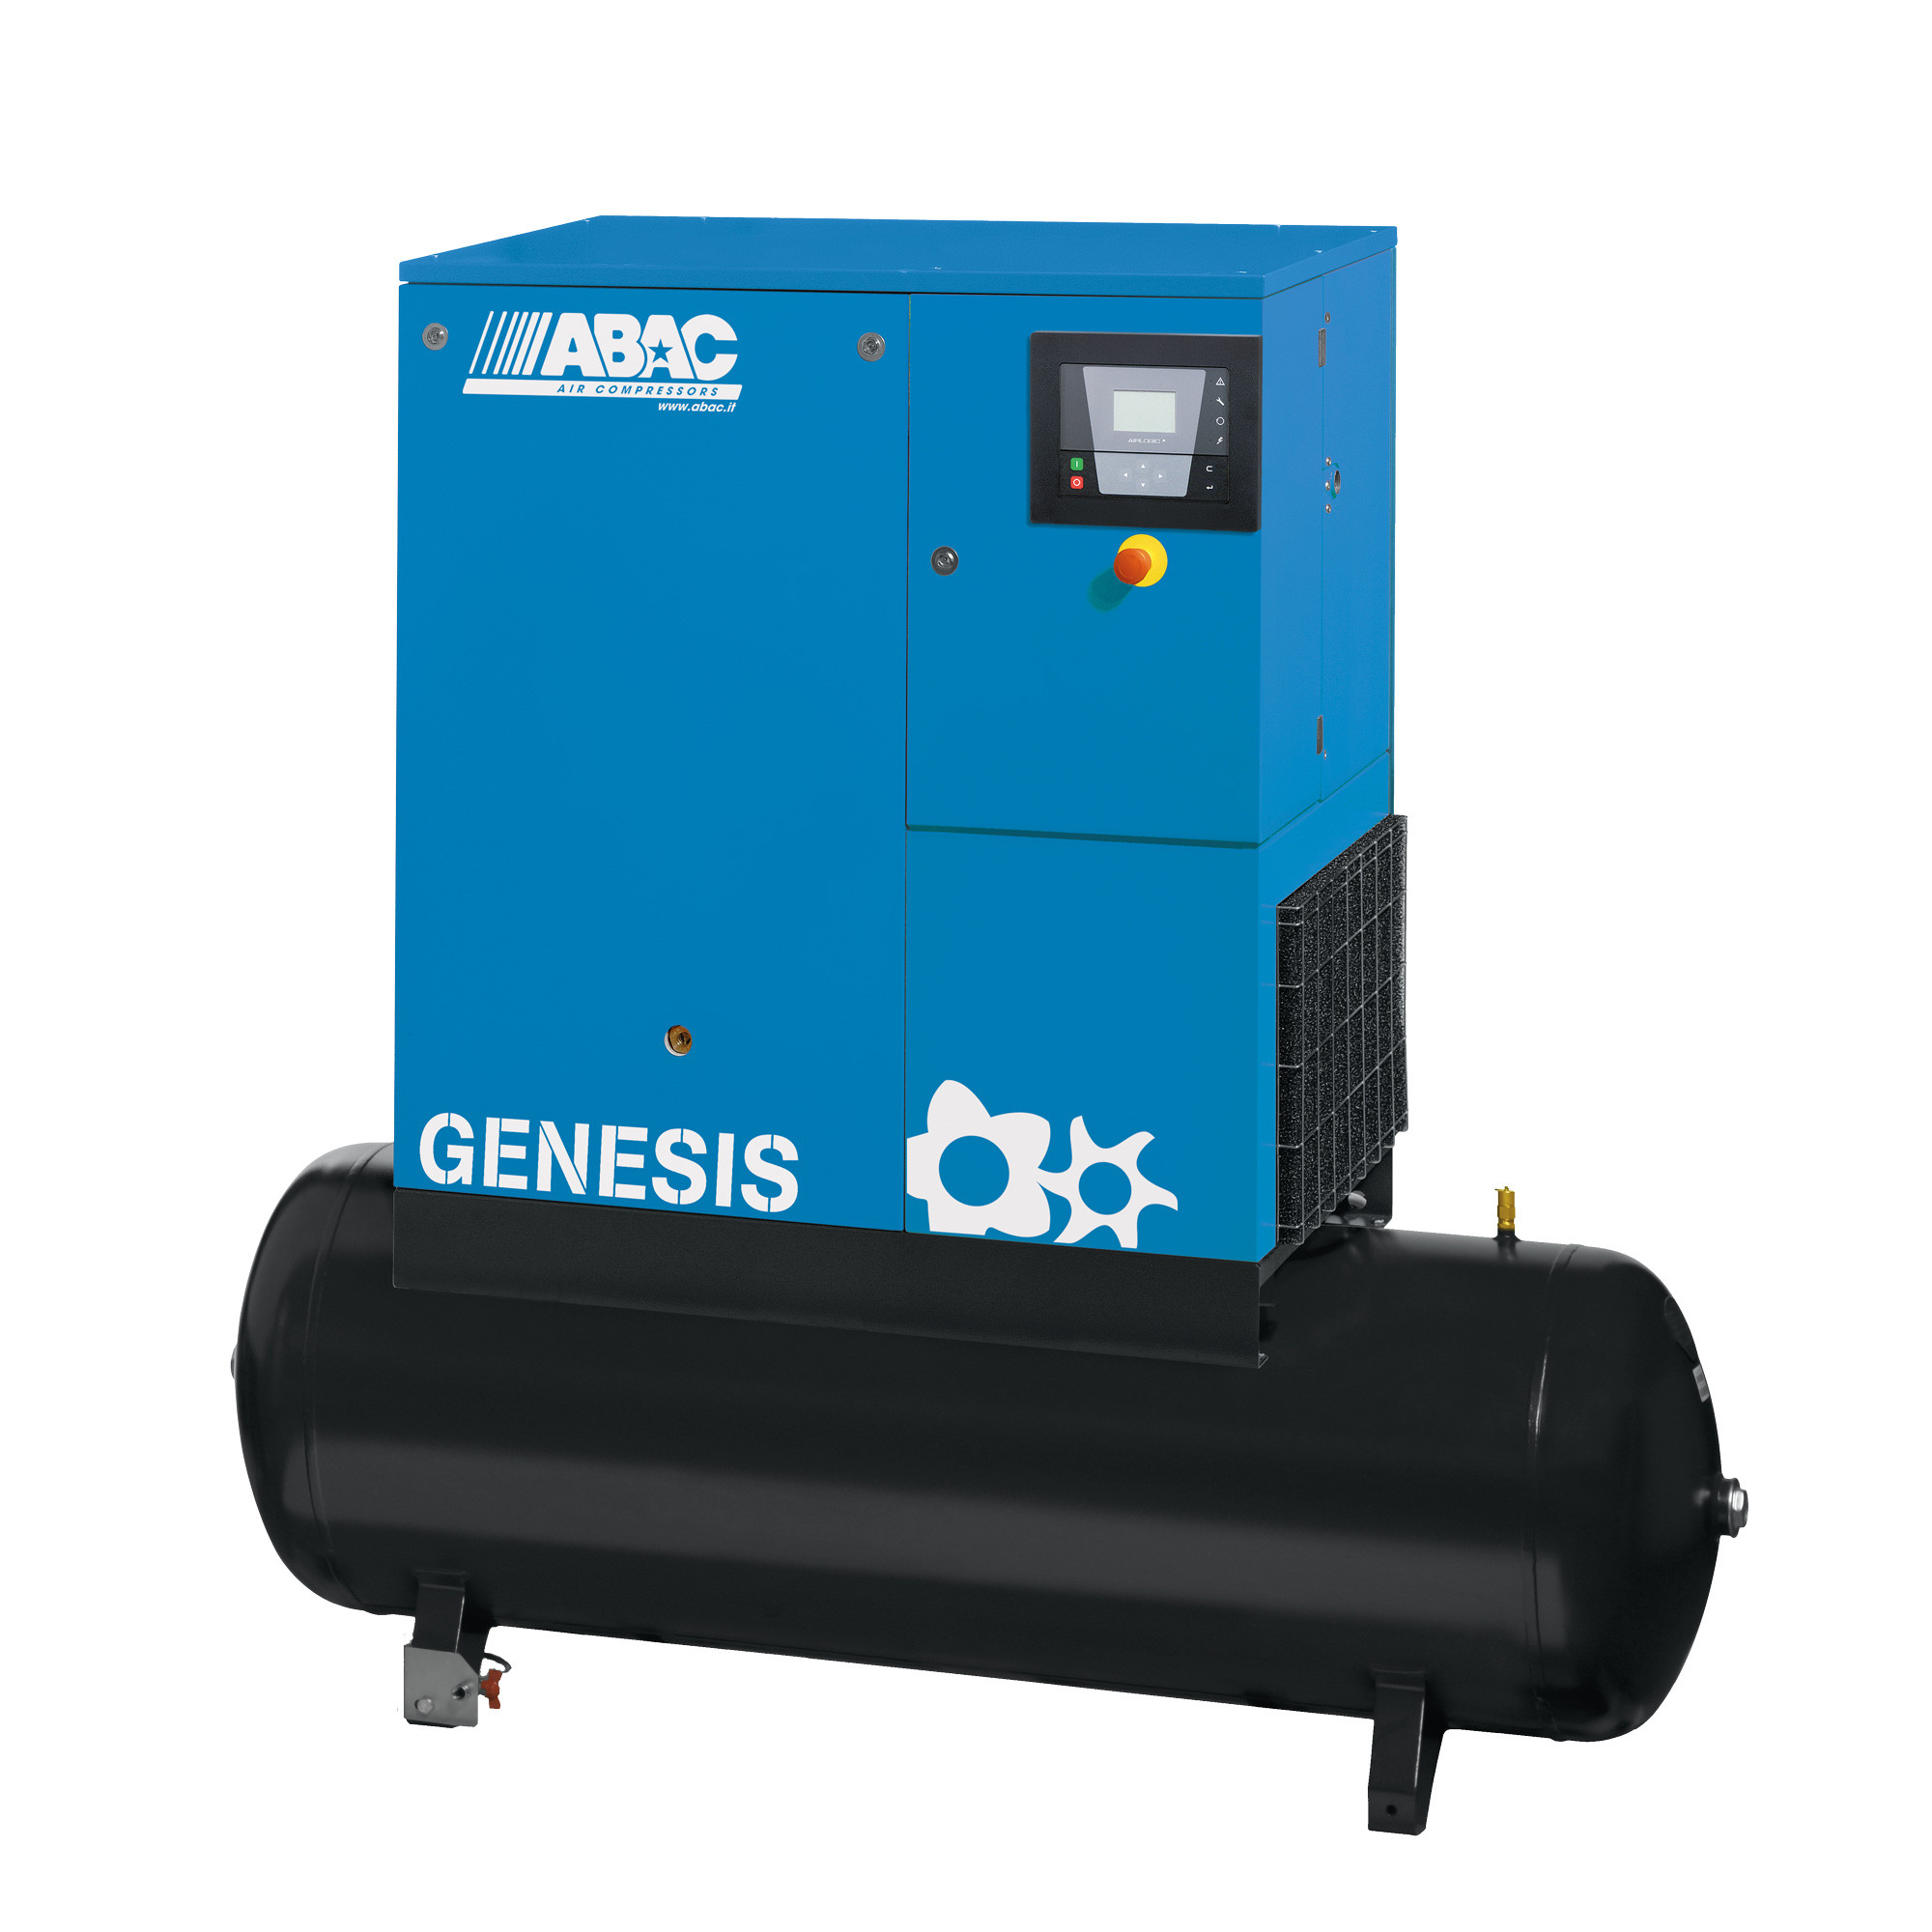 ABAC Genesis 500L, 43.4 CFM, 7.5 kW定速螺杆空压机